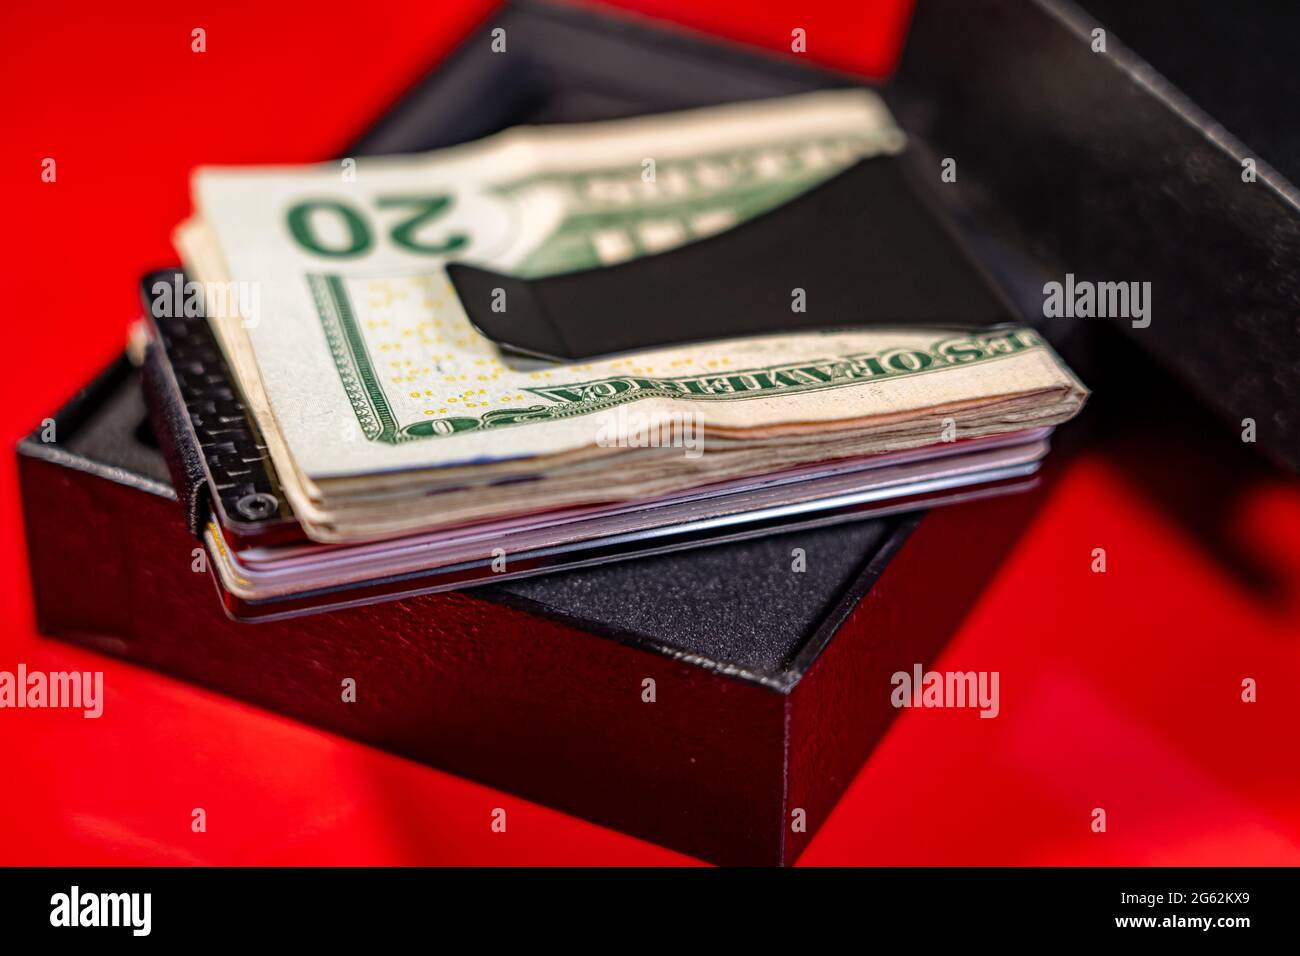 Attention sélective aux billets et aux cartes de crédit en dollars américains dans un clip en fibre de carbone noir placé sur une boîte noire. Arrière-plan rouge. Banque D'Images